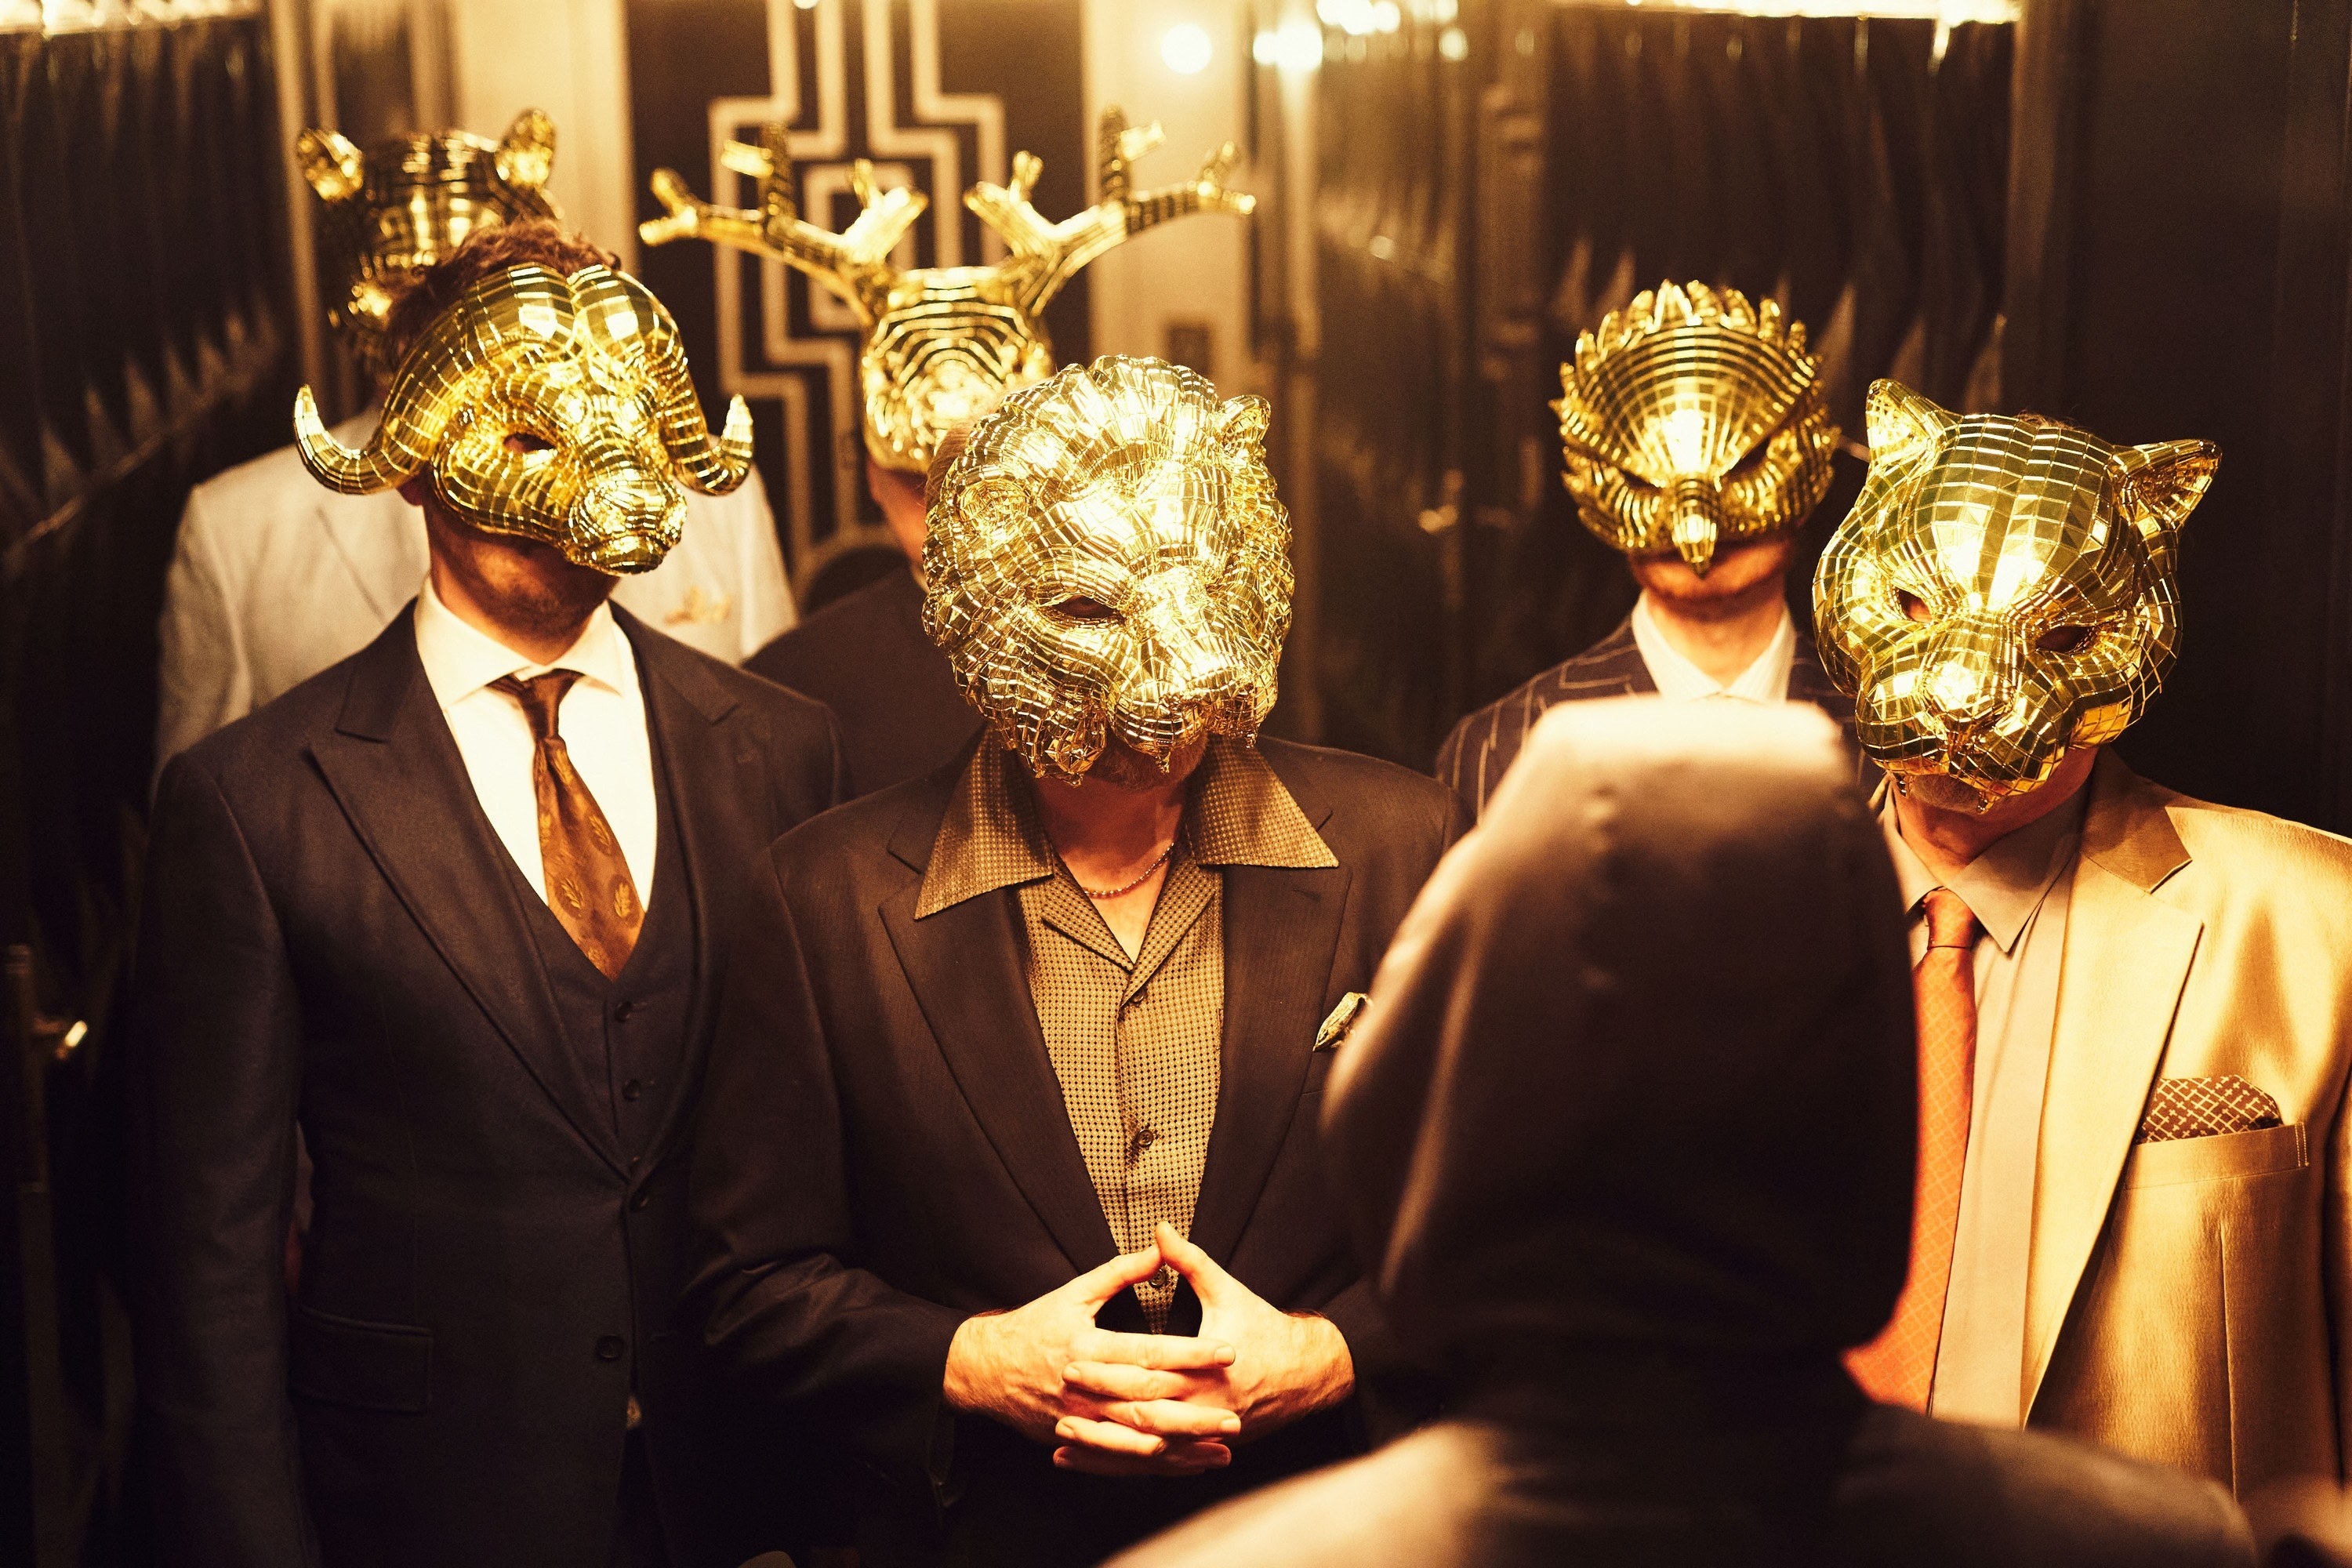 men in suits wearing animal masks